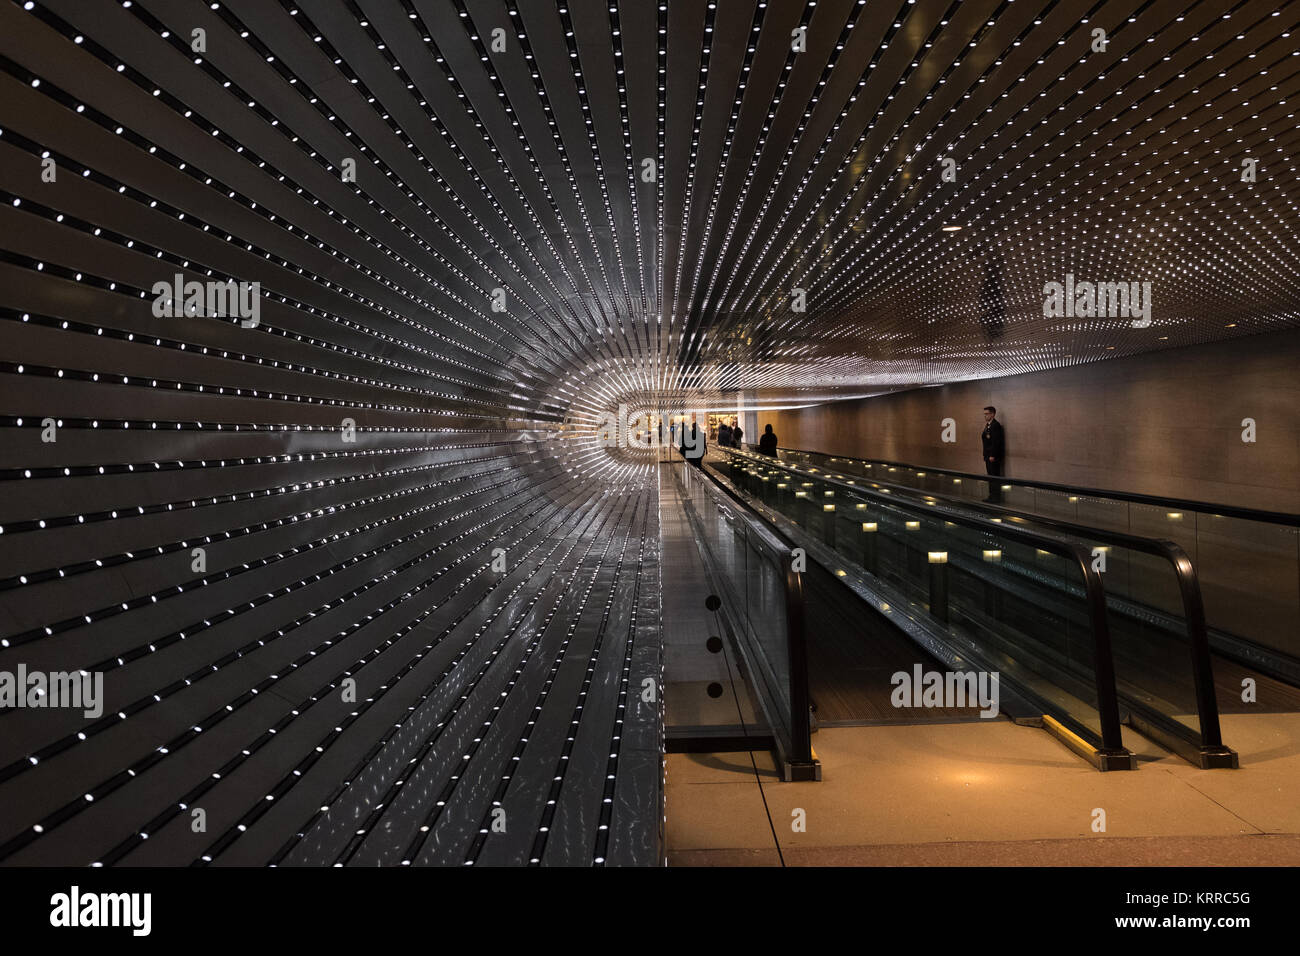 WASHINGTON DC, Stati Uniti — Multiverse di Leo Villareal è un'installazione di luci a LED ipnotizzante presso la National Gallery of Art di Washington DC. La grafica dinamica è composta da 41.000 nodi LED, che creano un'esperienza visiva accattivante che esplora il concetto del multiverso attraverso la luce, il movimento e la tecnologia. Foto Stock